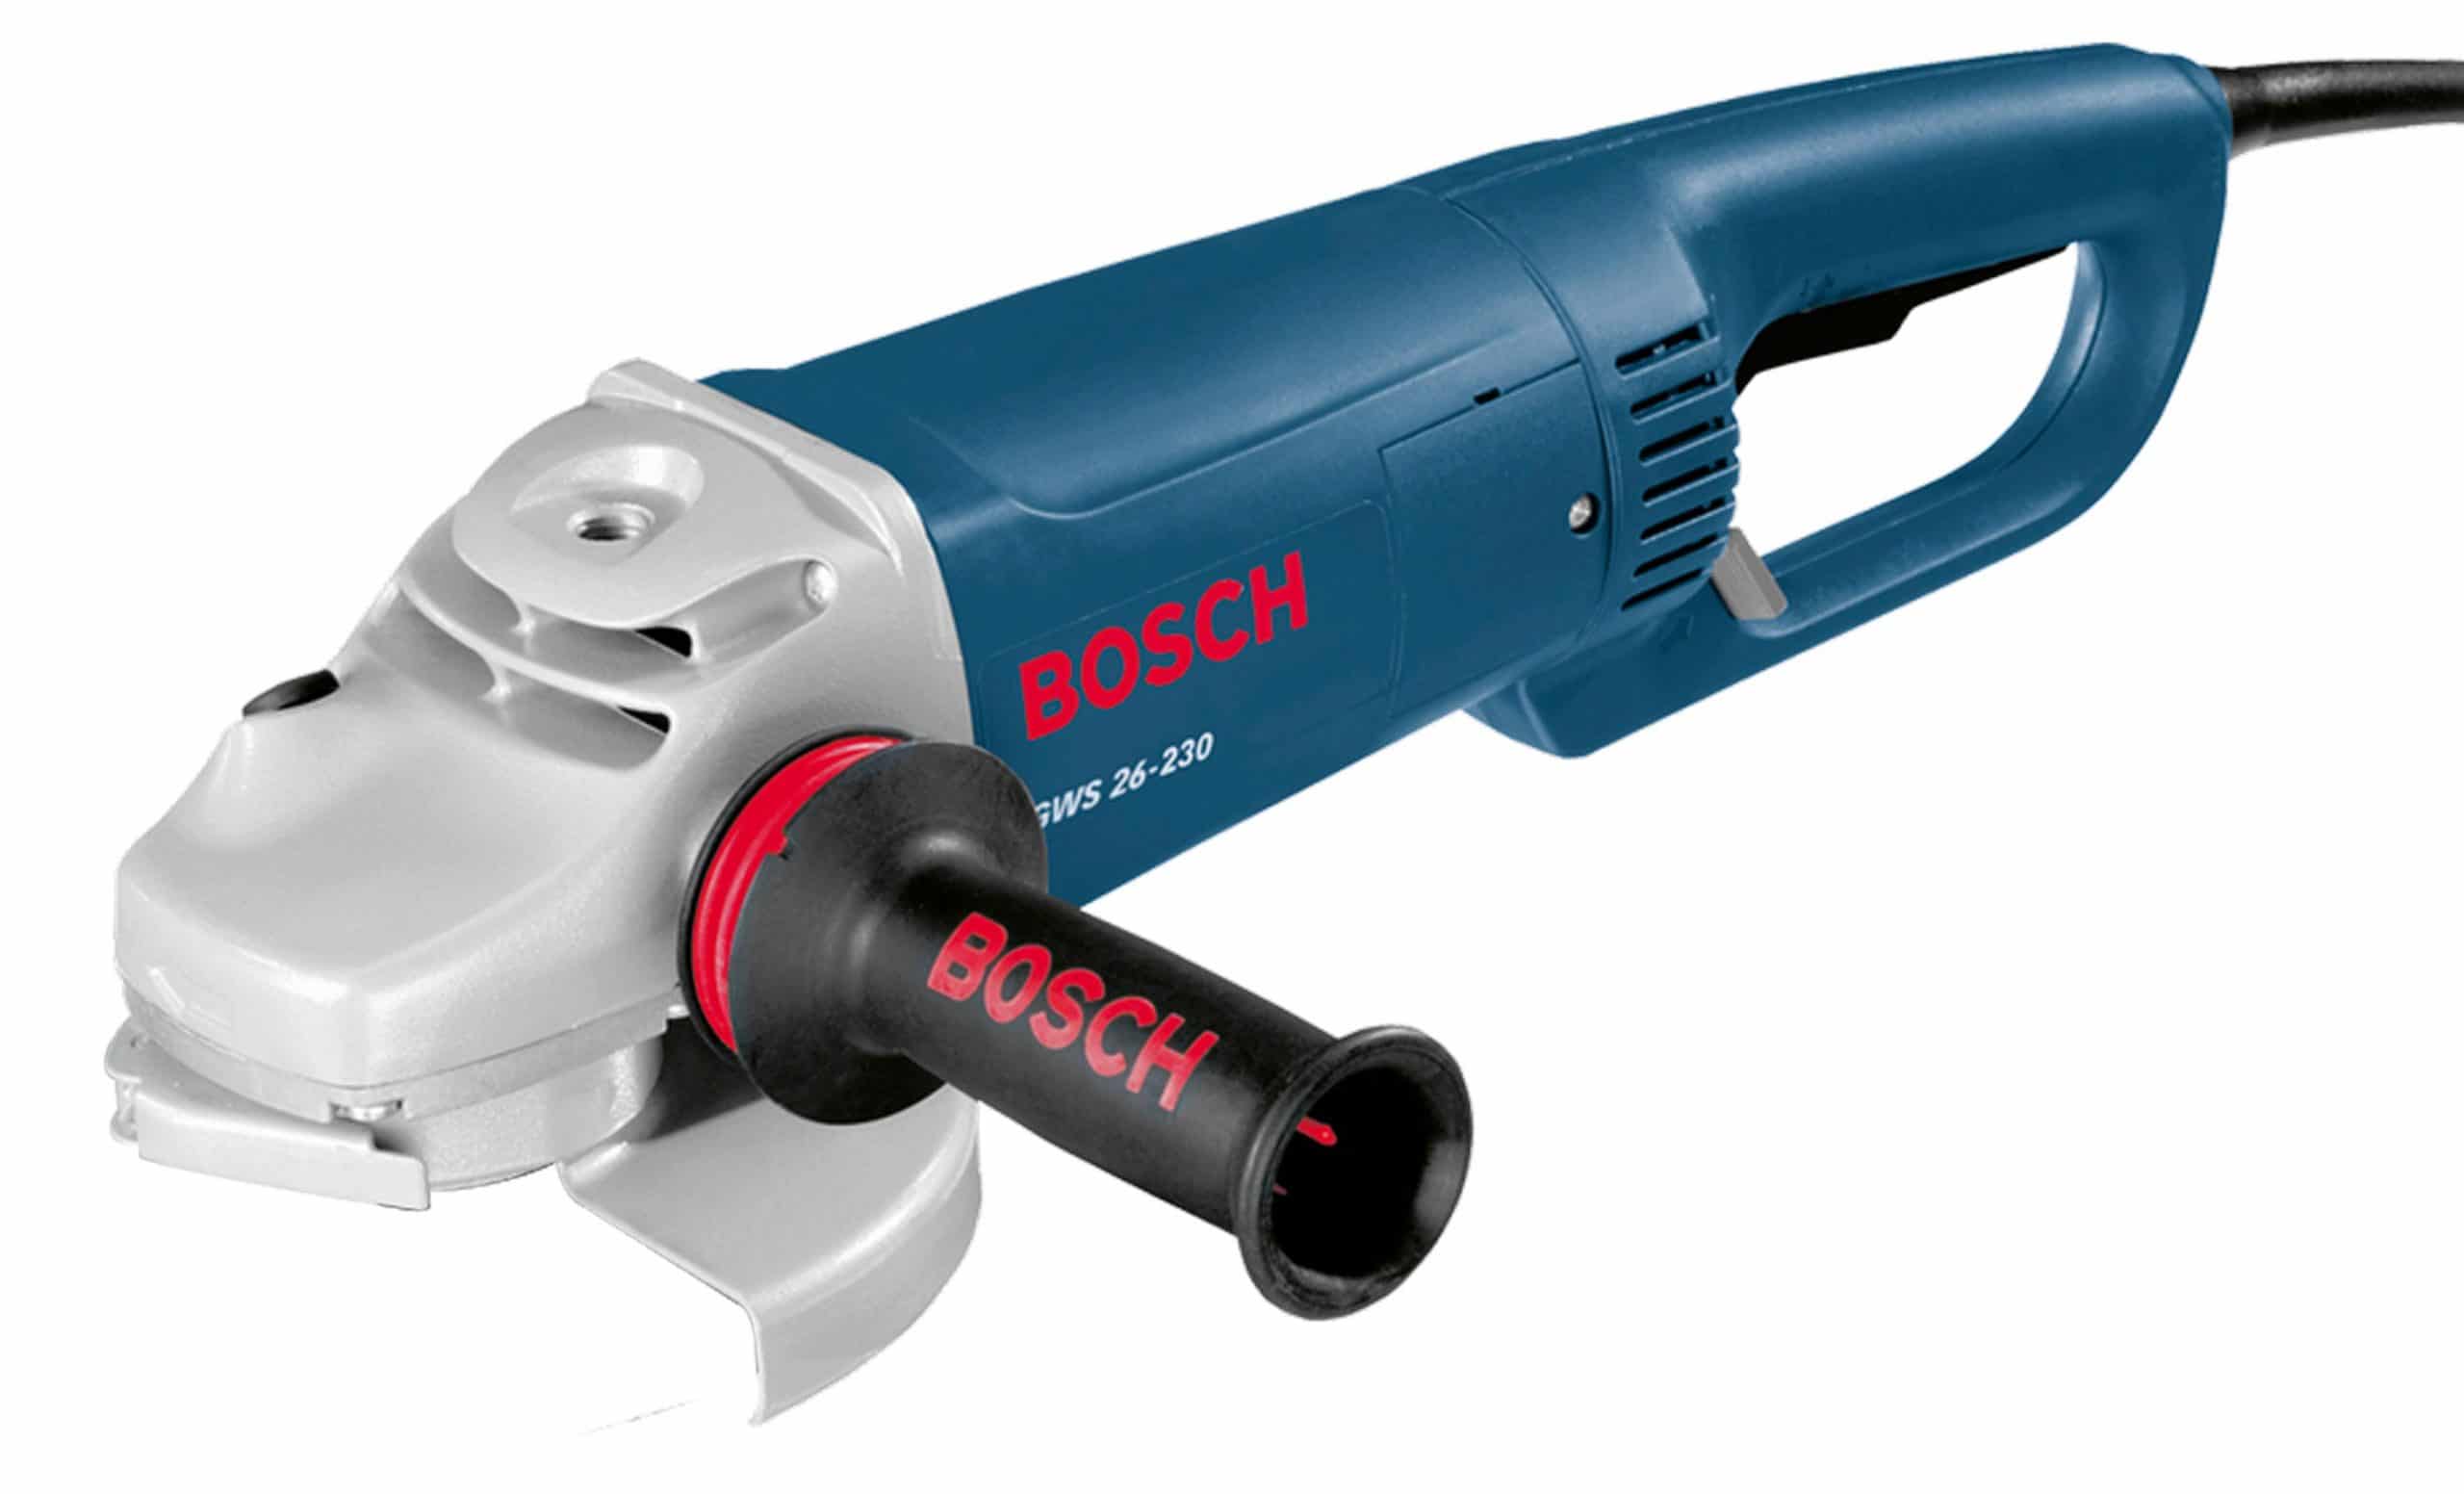 BOS06018A60G0 - Esmeriladora Angular 9 2600W GWS26-230 Bosch 06018A60G0 - 